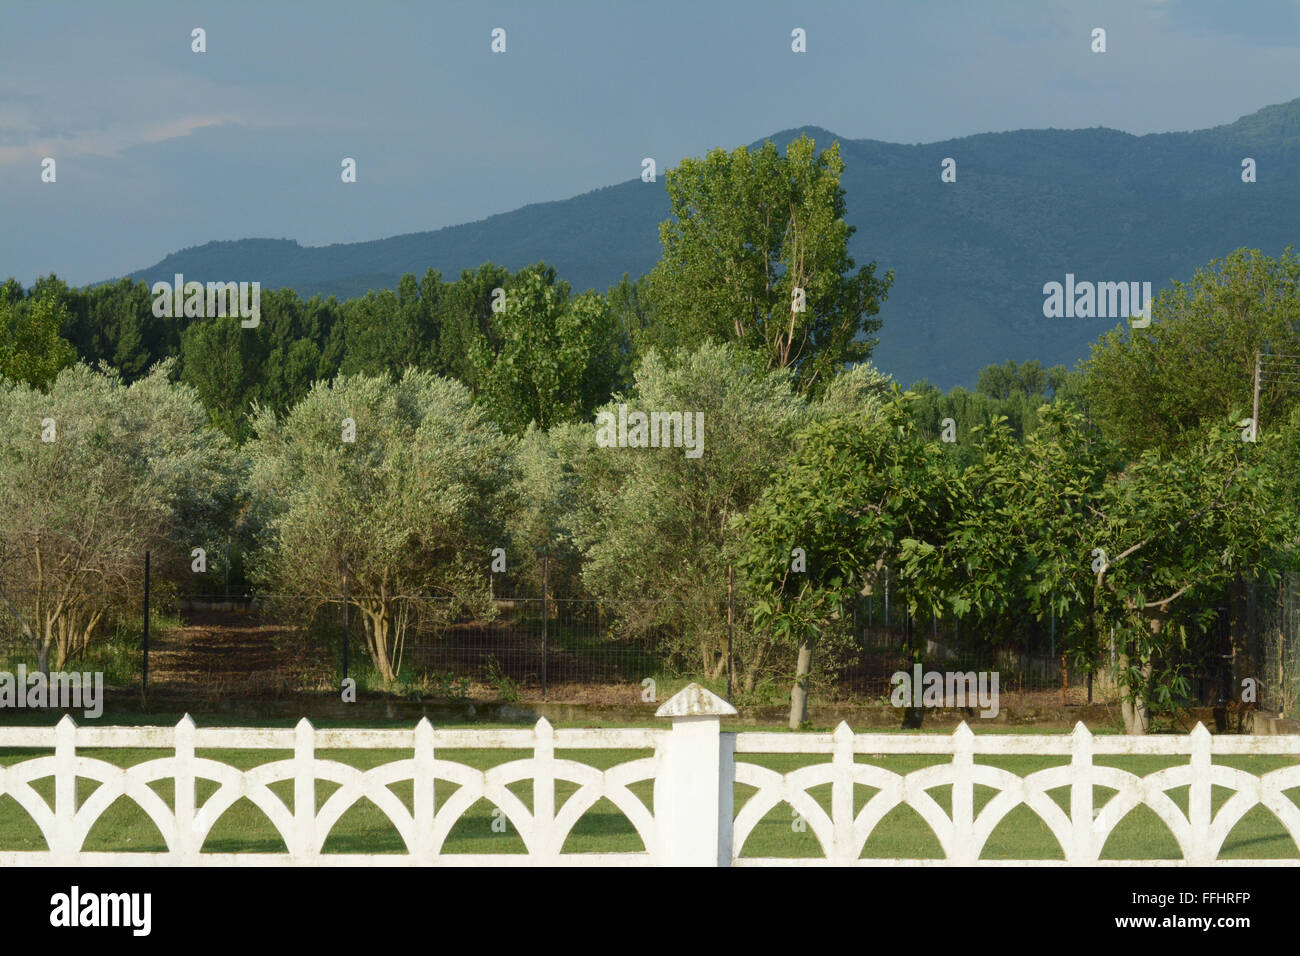 Paysage grec avec clôture blanche en premier plan, champ d'oliviers, arbres et montagne. Banque D'Images